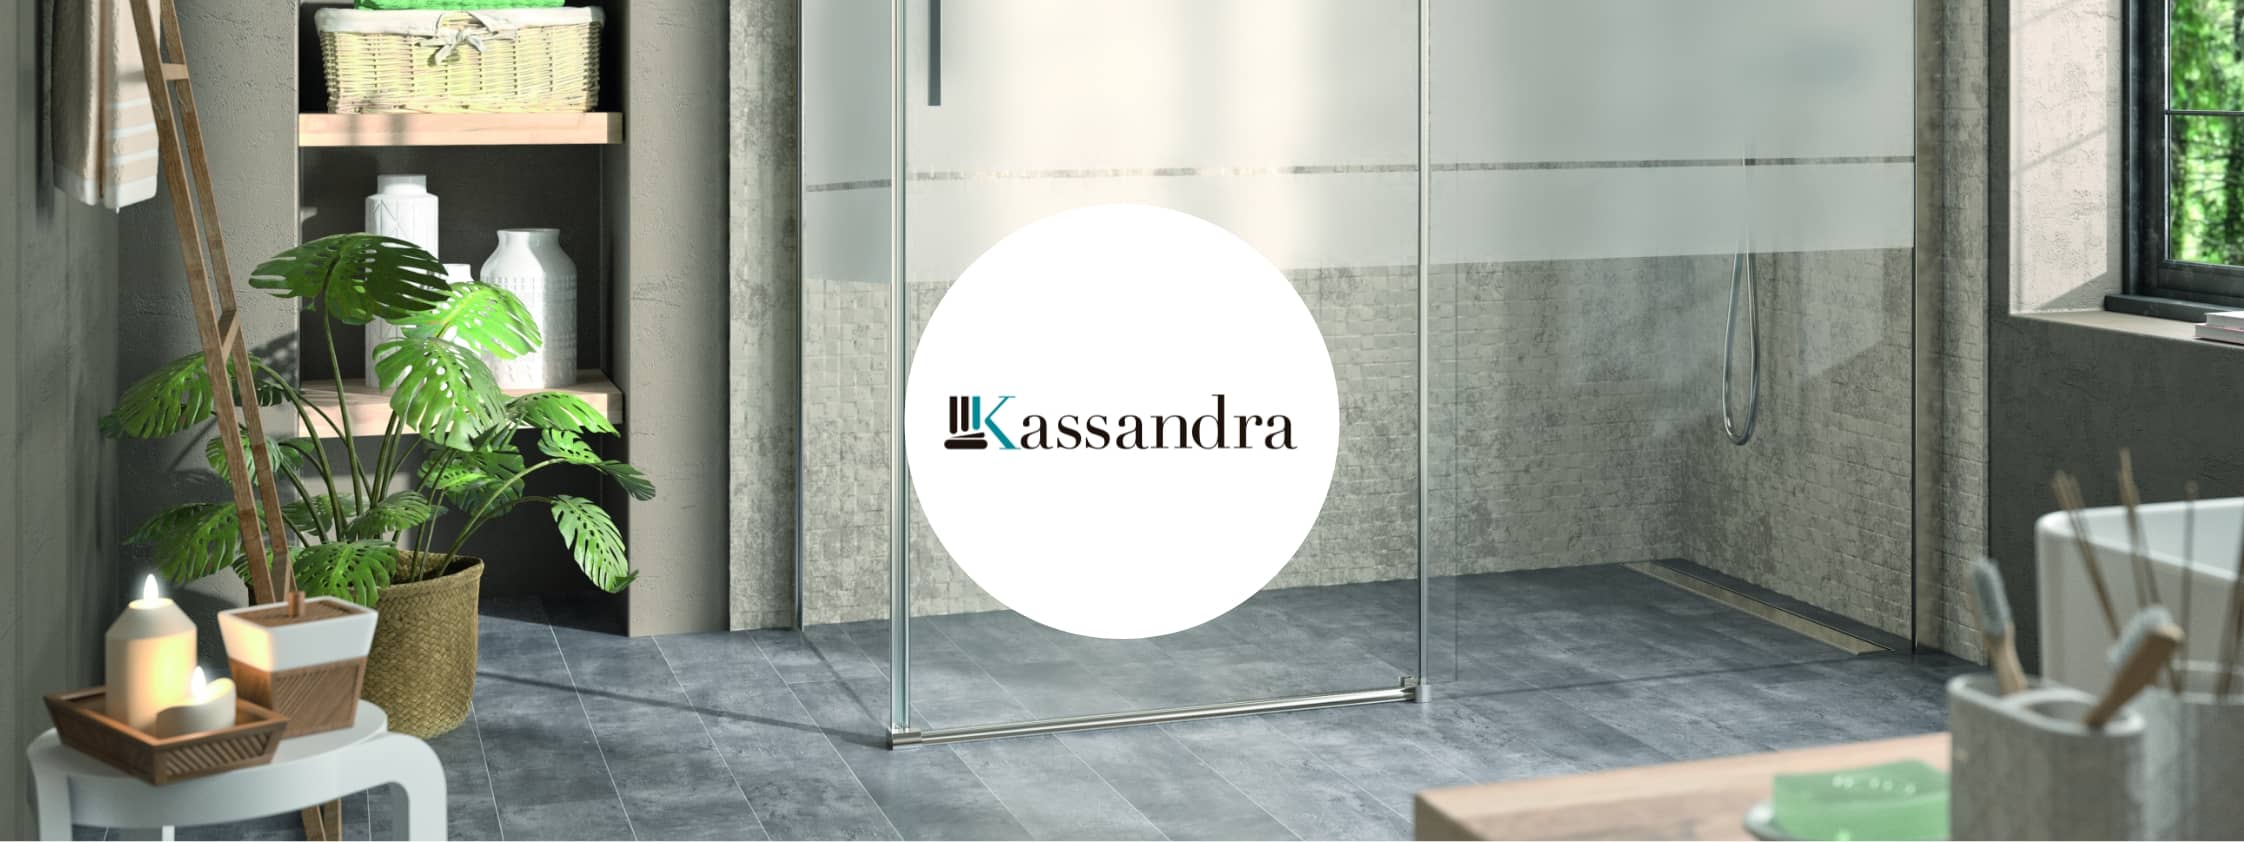 Colecciones y productos de la marca - Kassandra